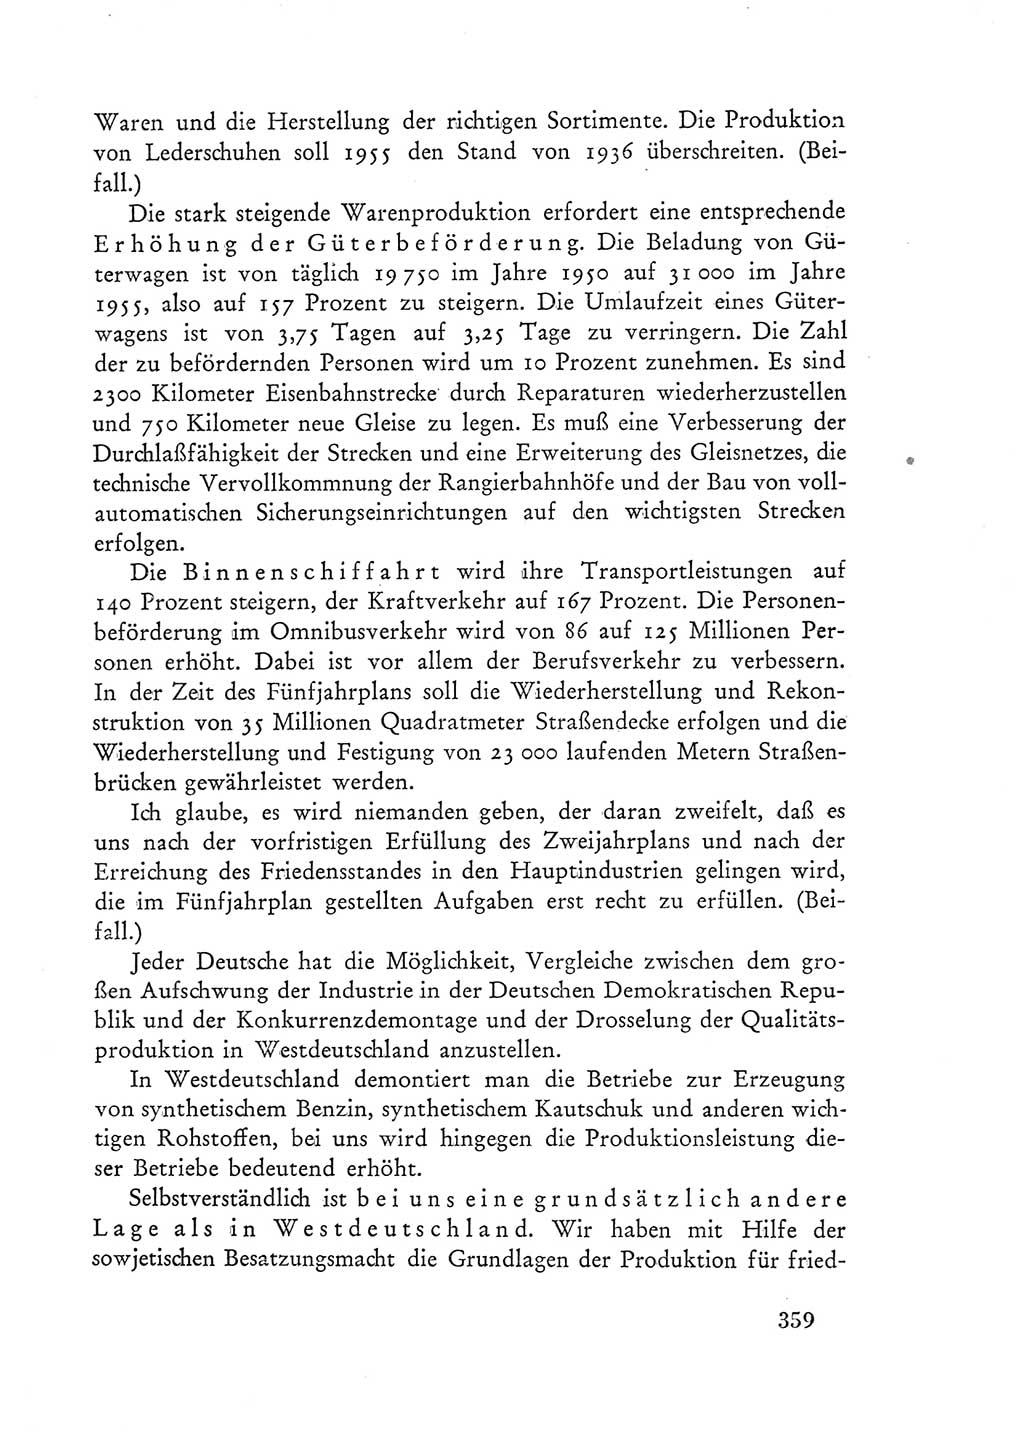 Protokoll der Verhandlungen des Ⅲ. Parteitages der Sozialistischen Einheitspartei Deutschlands (SED) [Deutsche Demokratische Republik (DDR)] 1950, Band 1, Seite 359 (Prot. Verh. Ⅲ. PT SED DDR 1950, Bd. 1, S. 359)